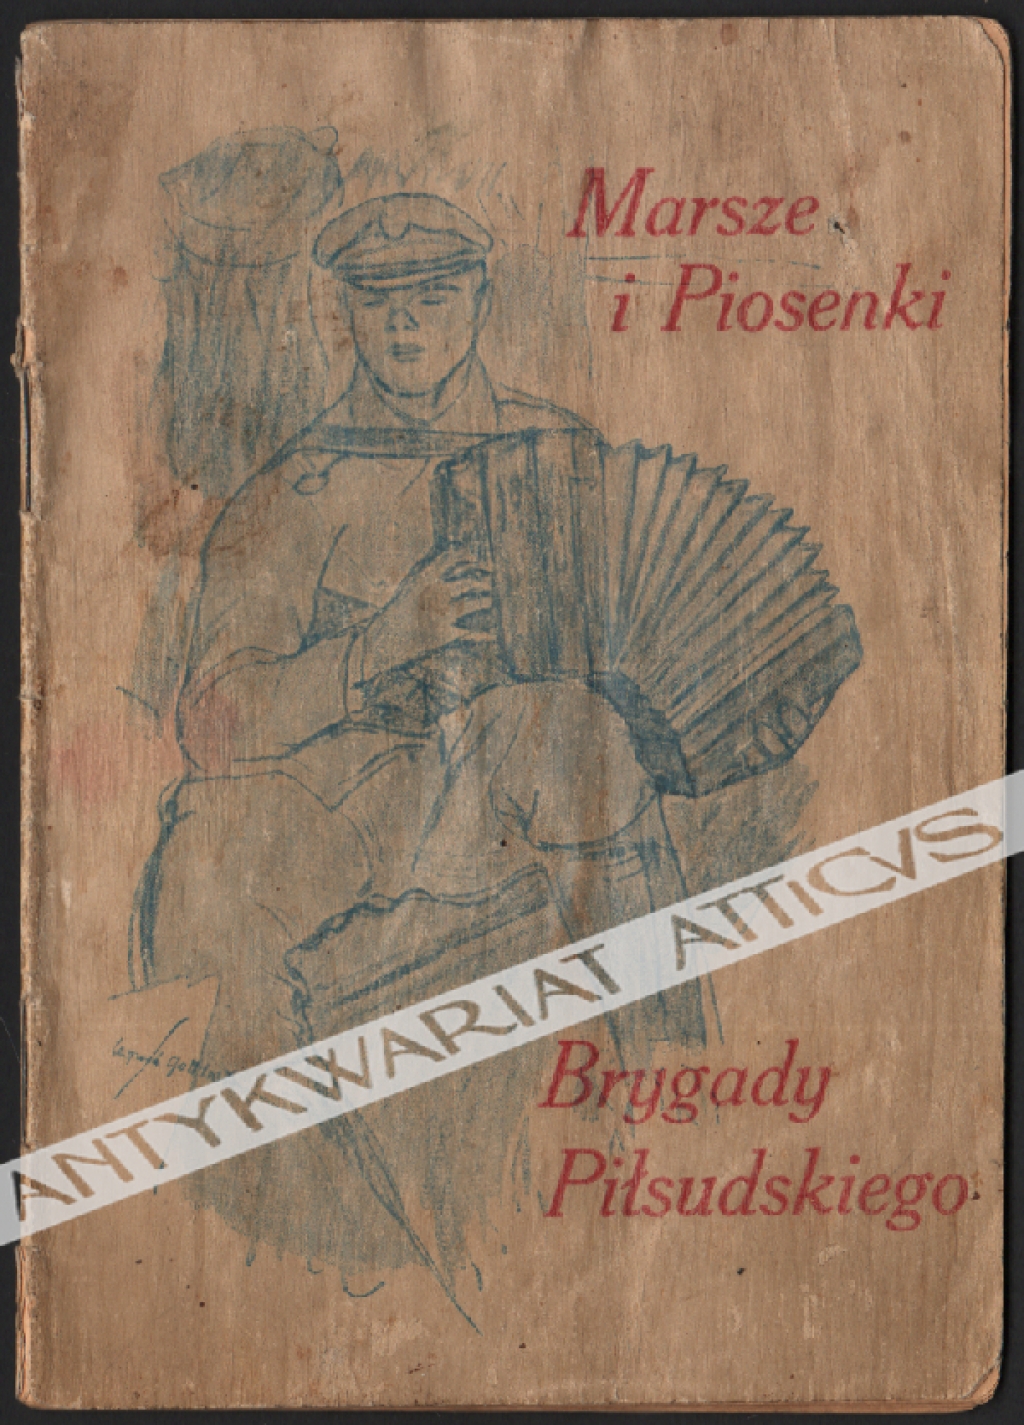 Marsze i piosenki Brygady Piłsudskiego